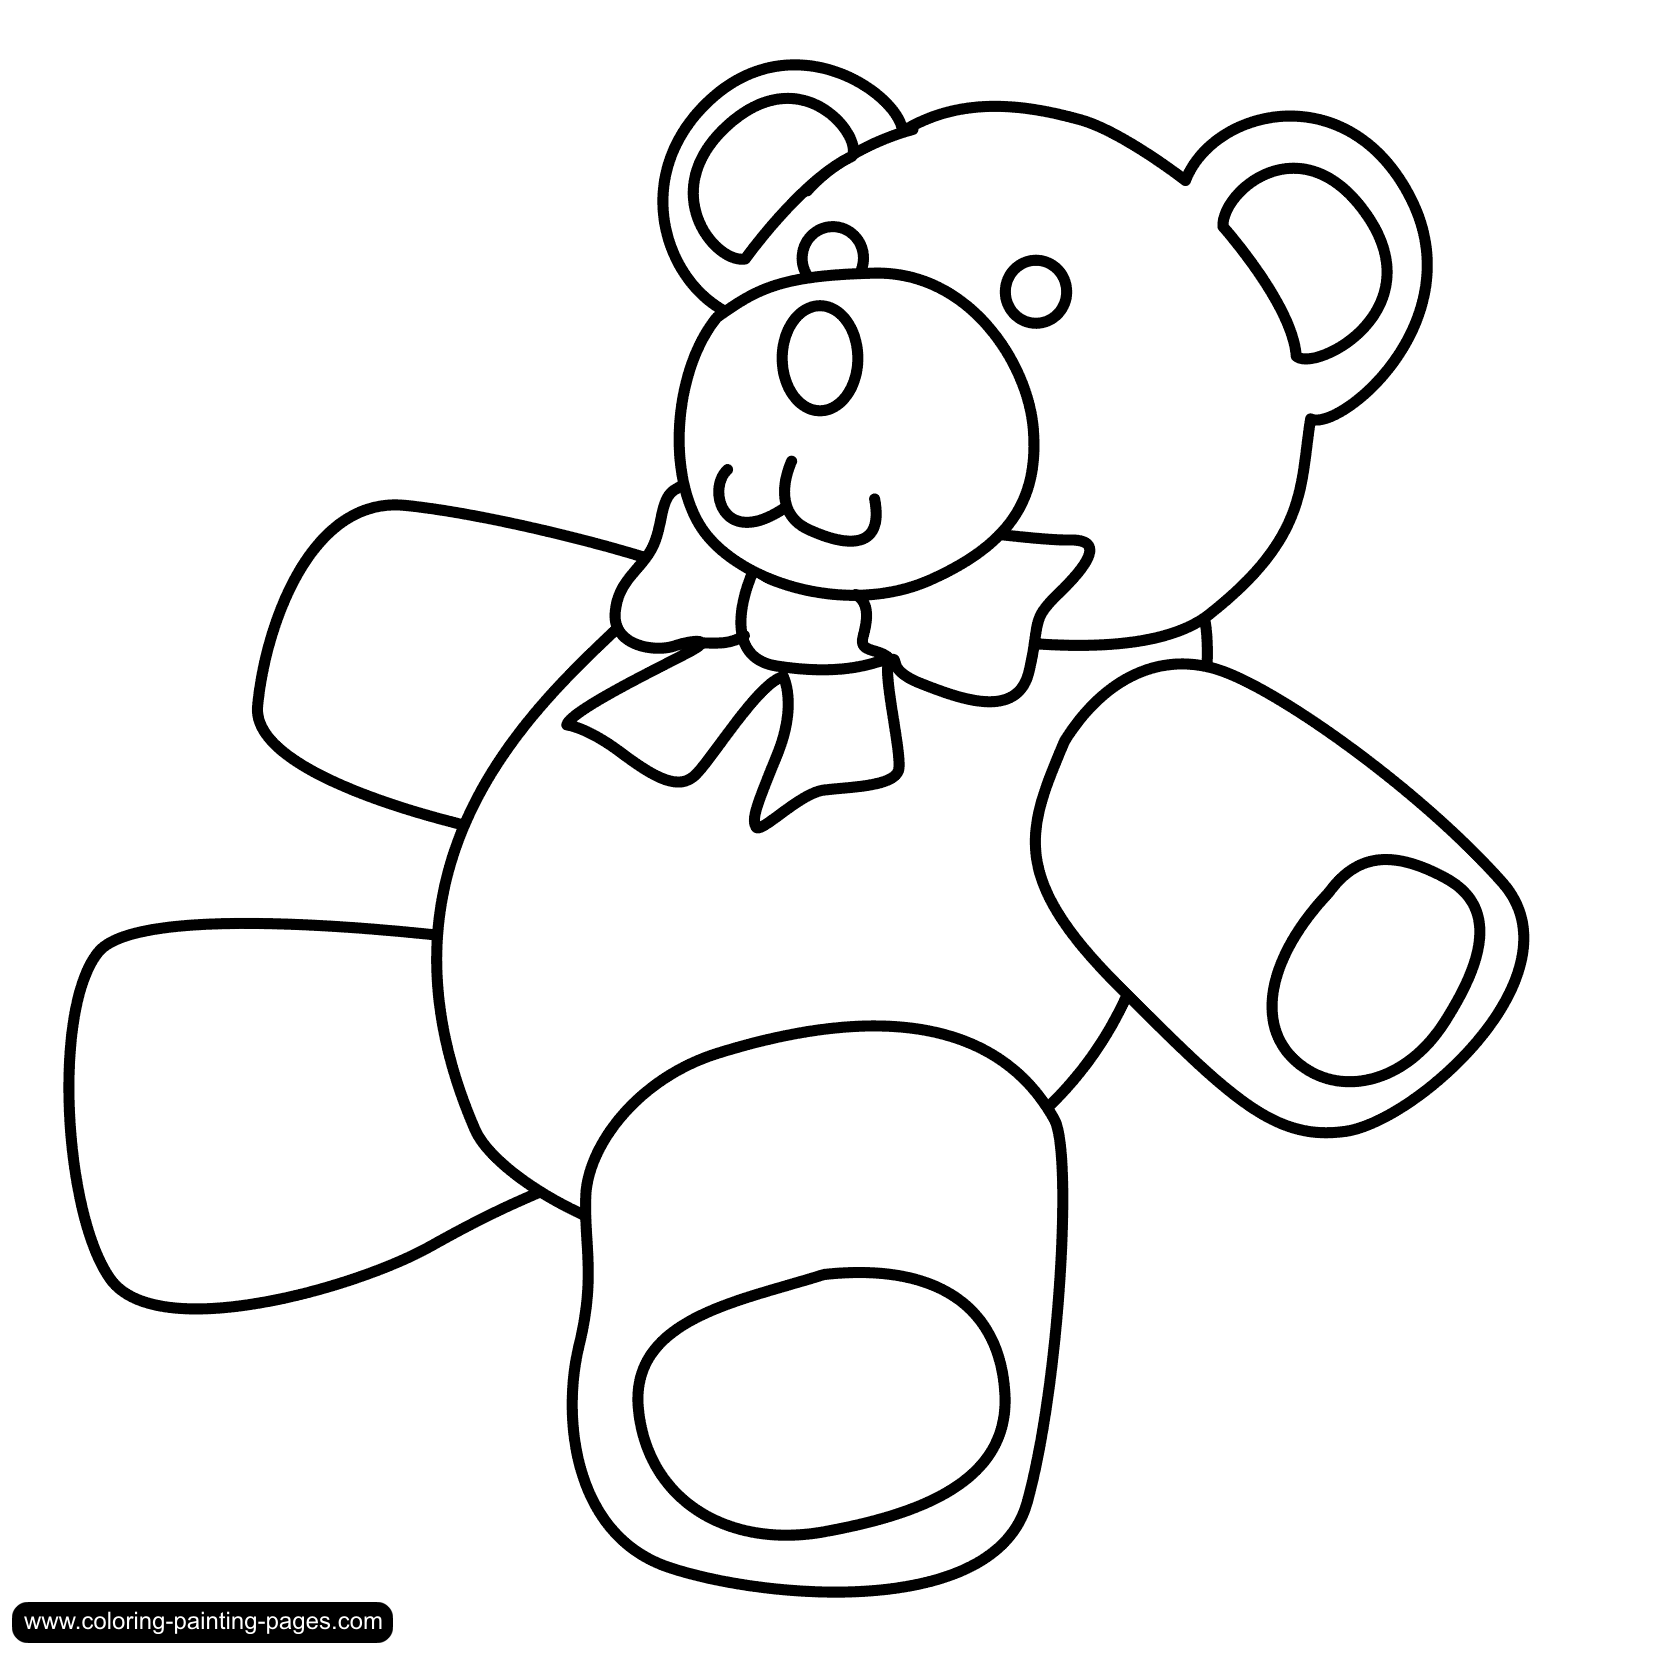 Teddy bear outline clip art